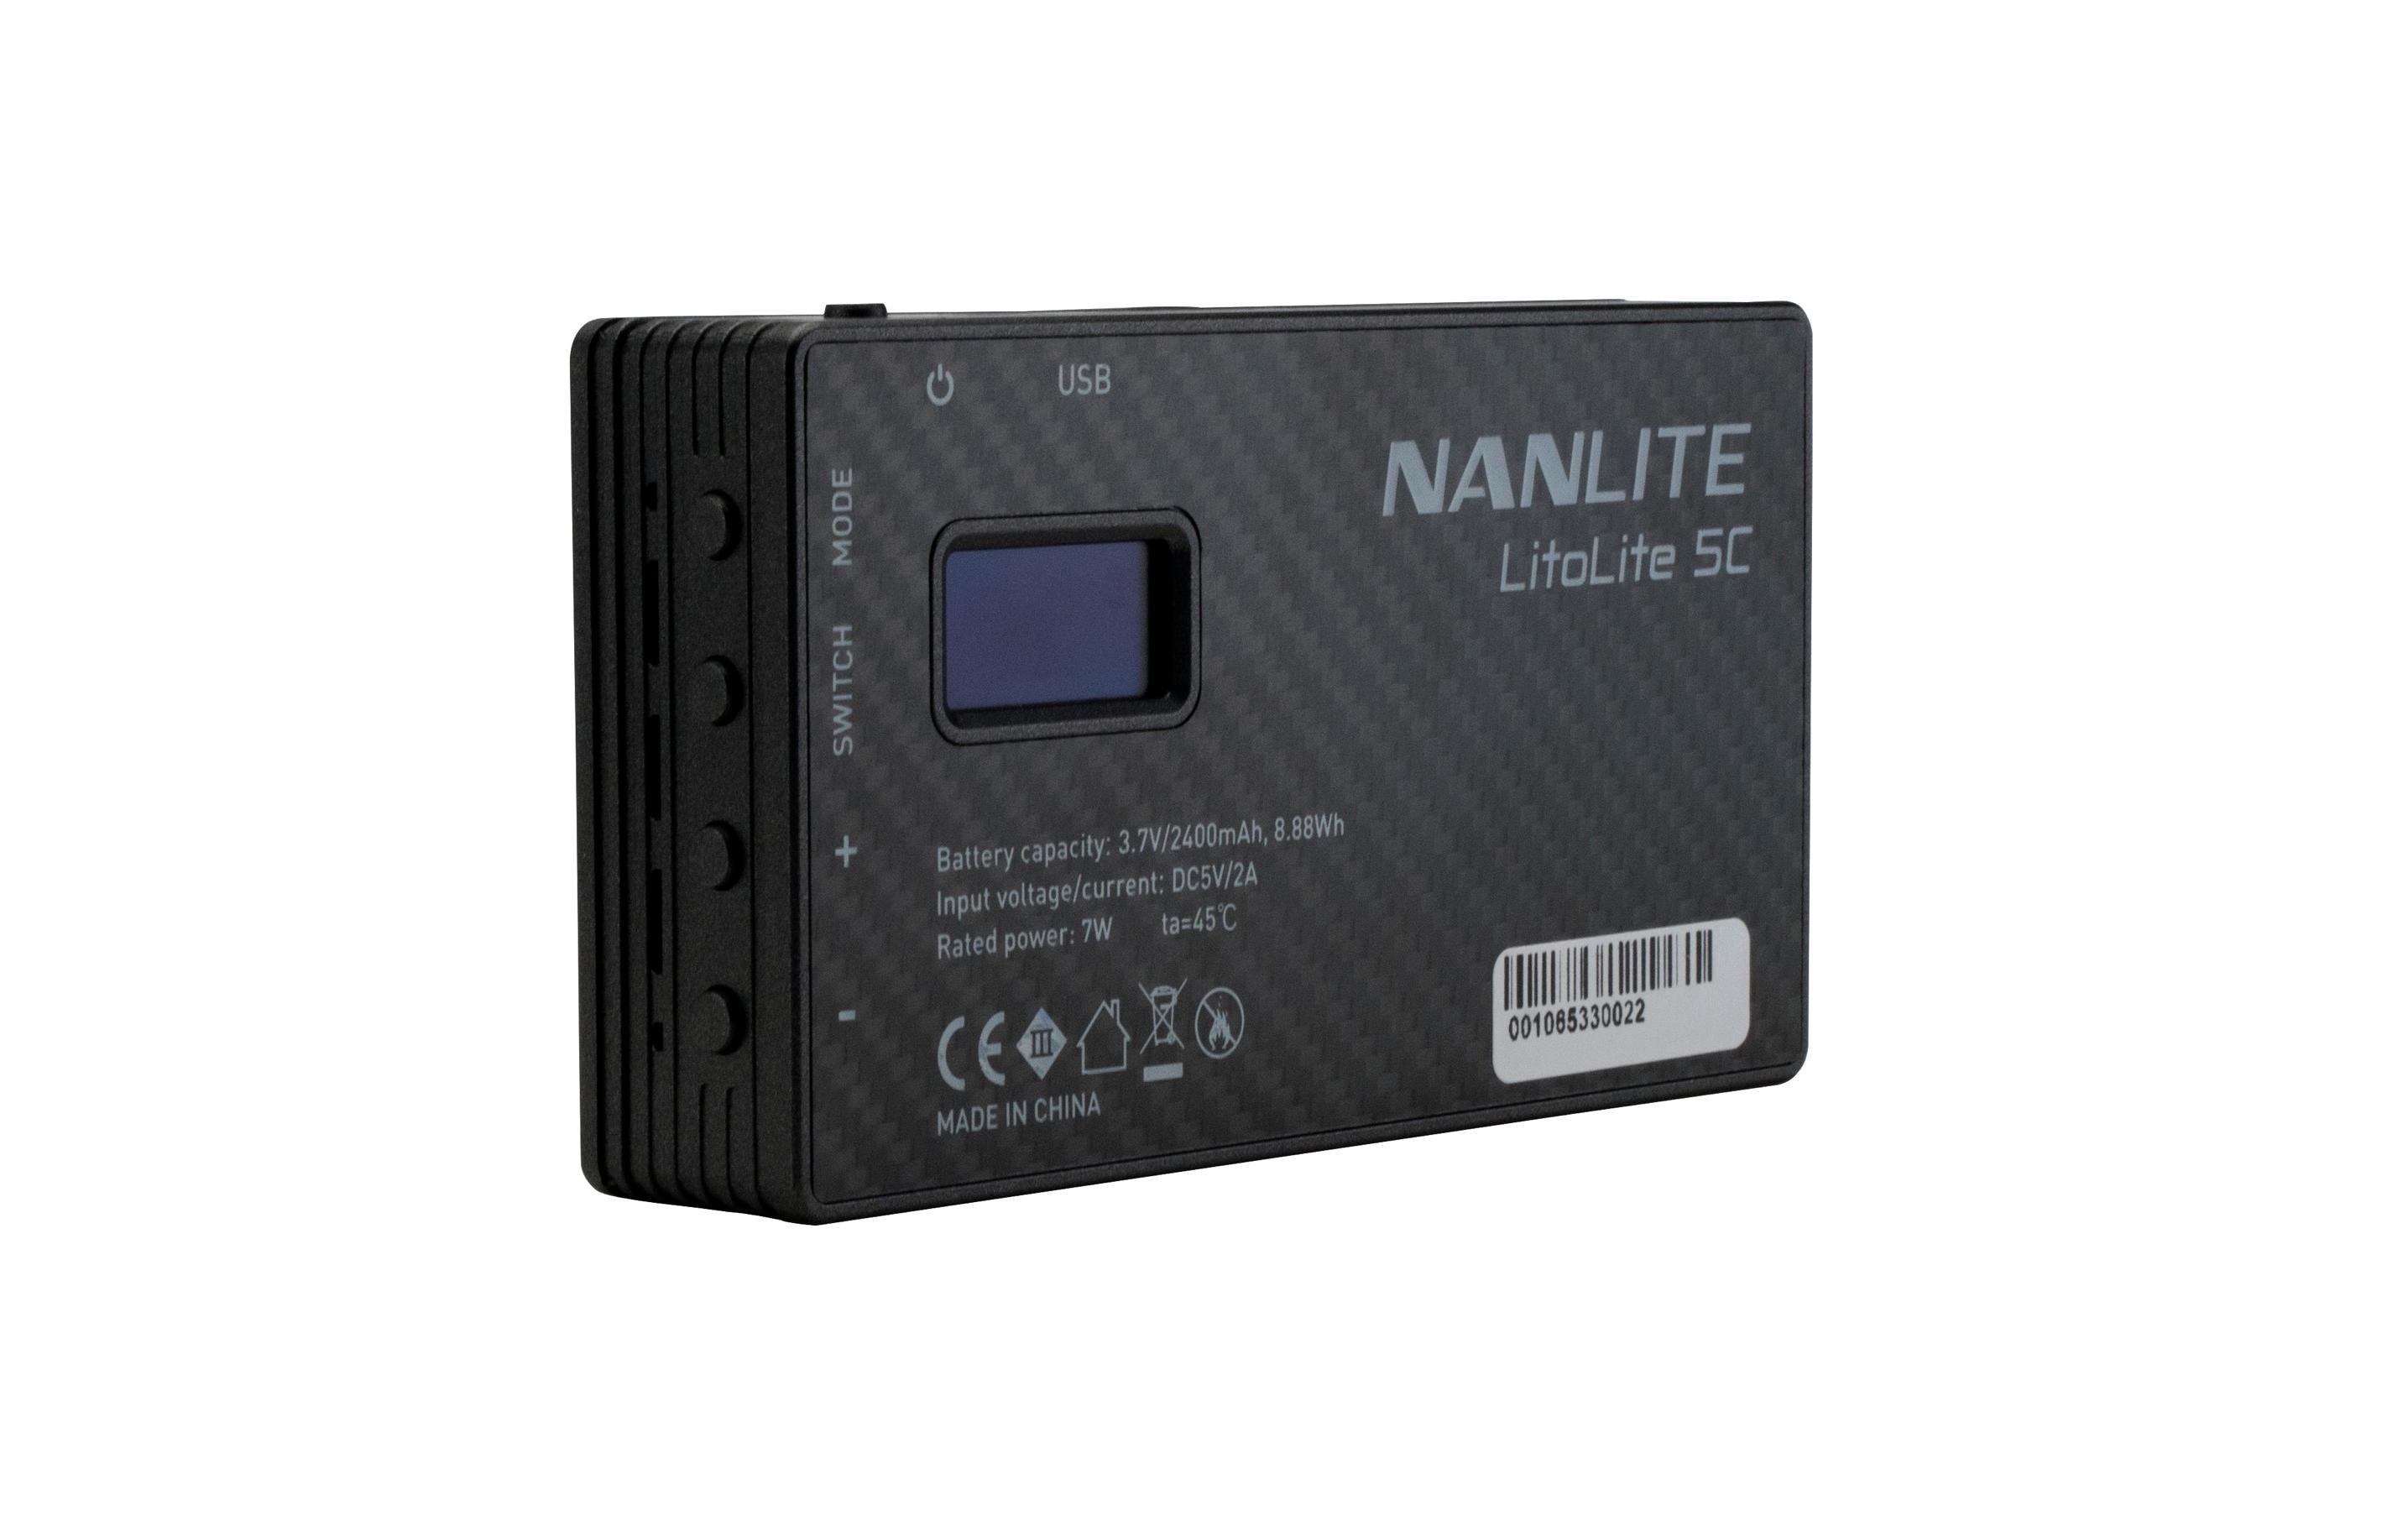 Nanlite LitoLite 5C